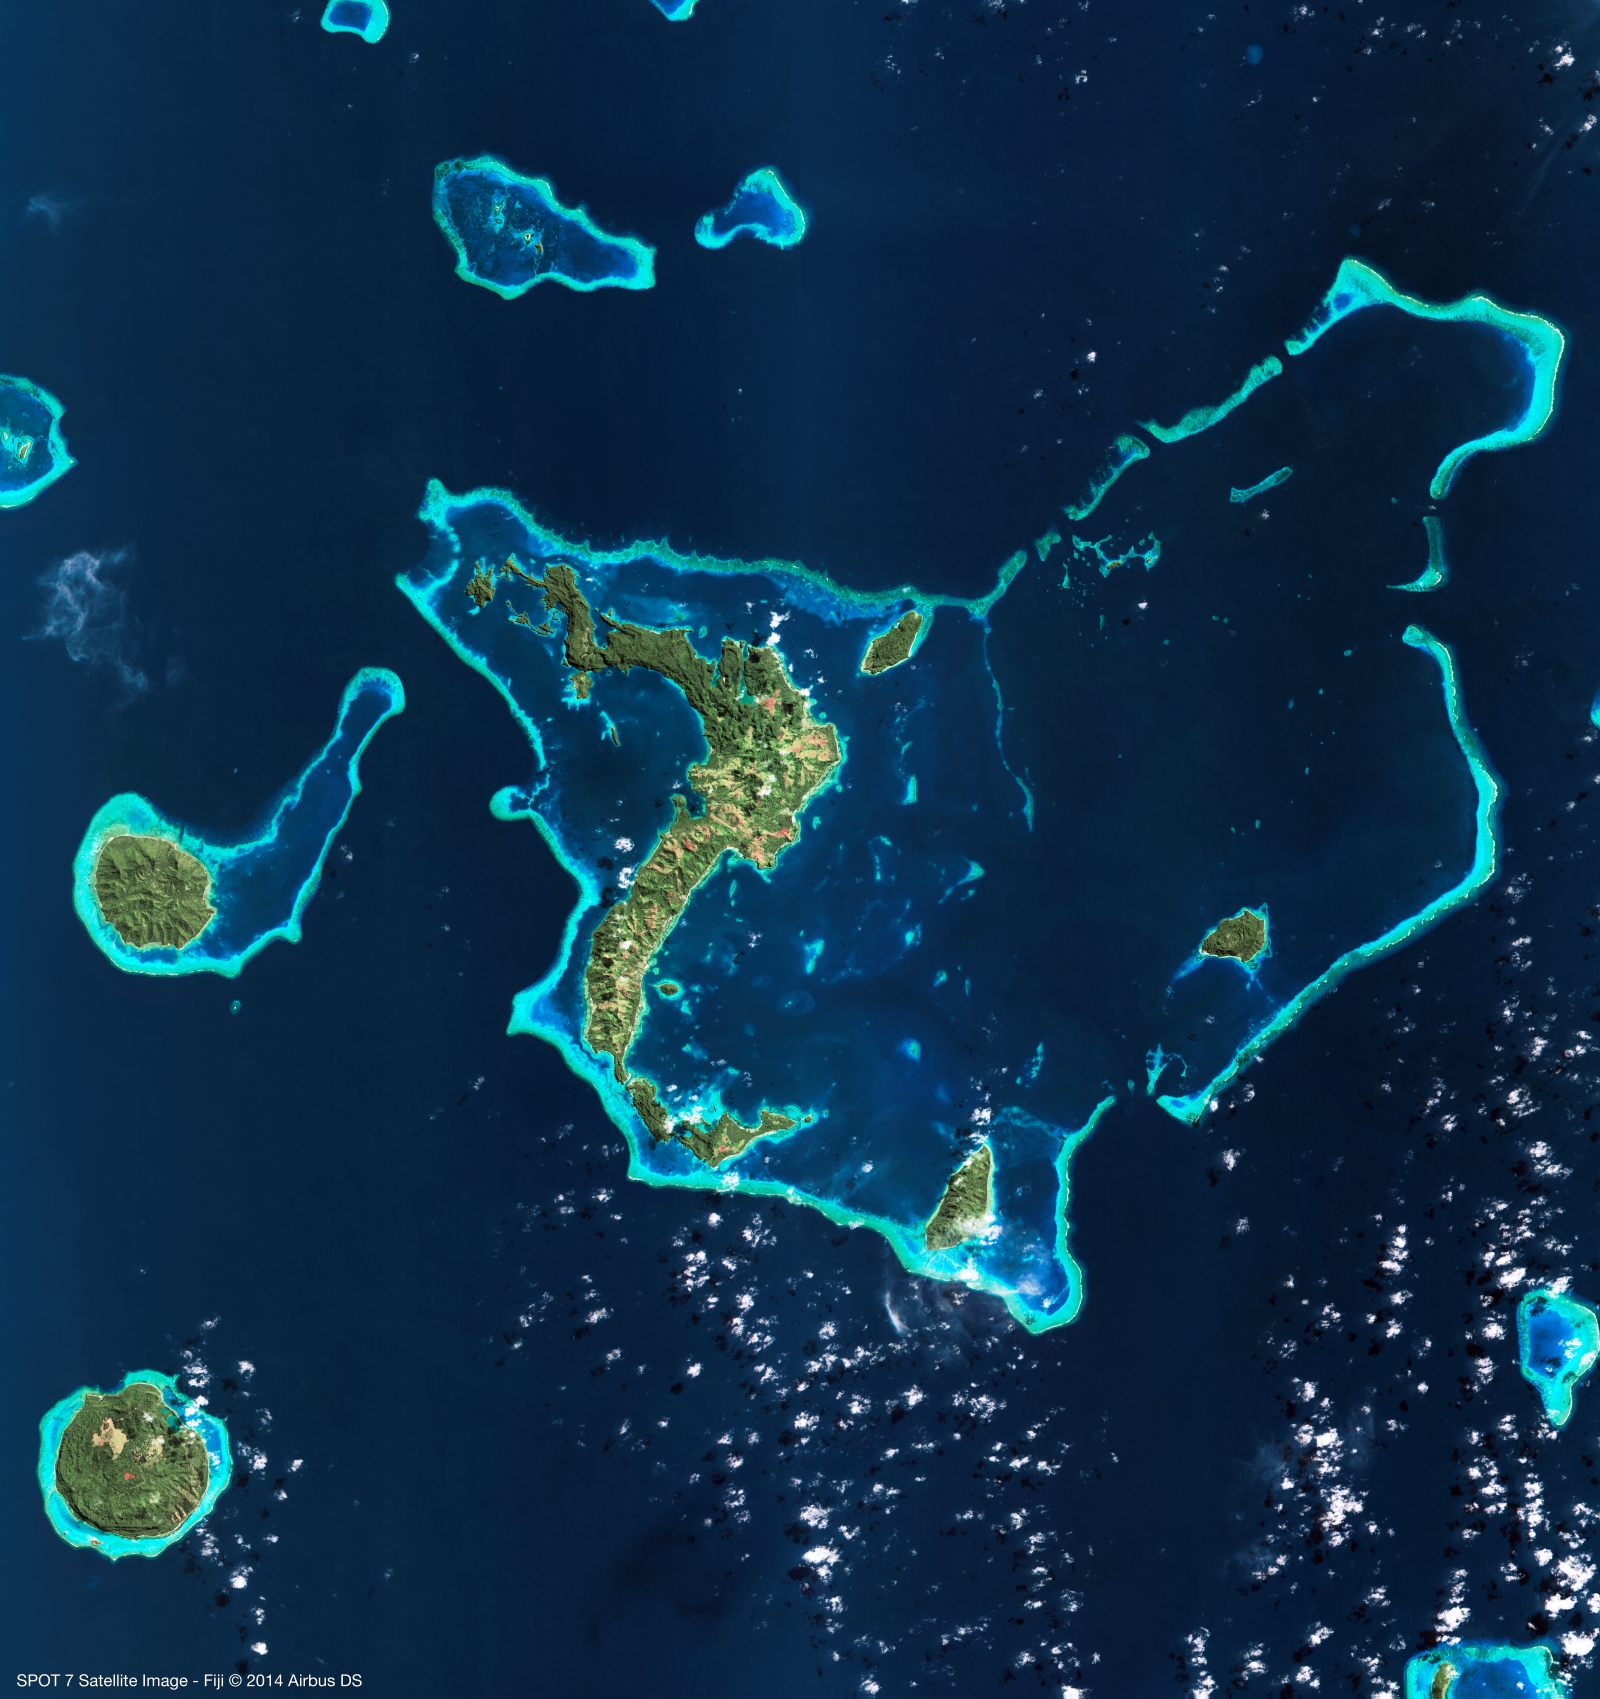 Saint-Valentin - SPOT 7 amoureux : une île en forme cœur au nord des Fidji. Image acquise par le satellite Spot 7 - Airbus Defence and Space